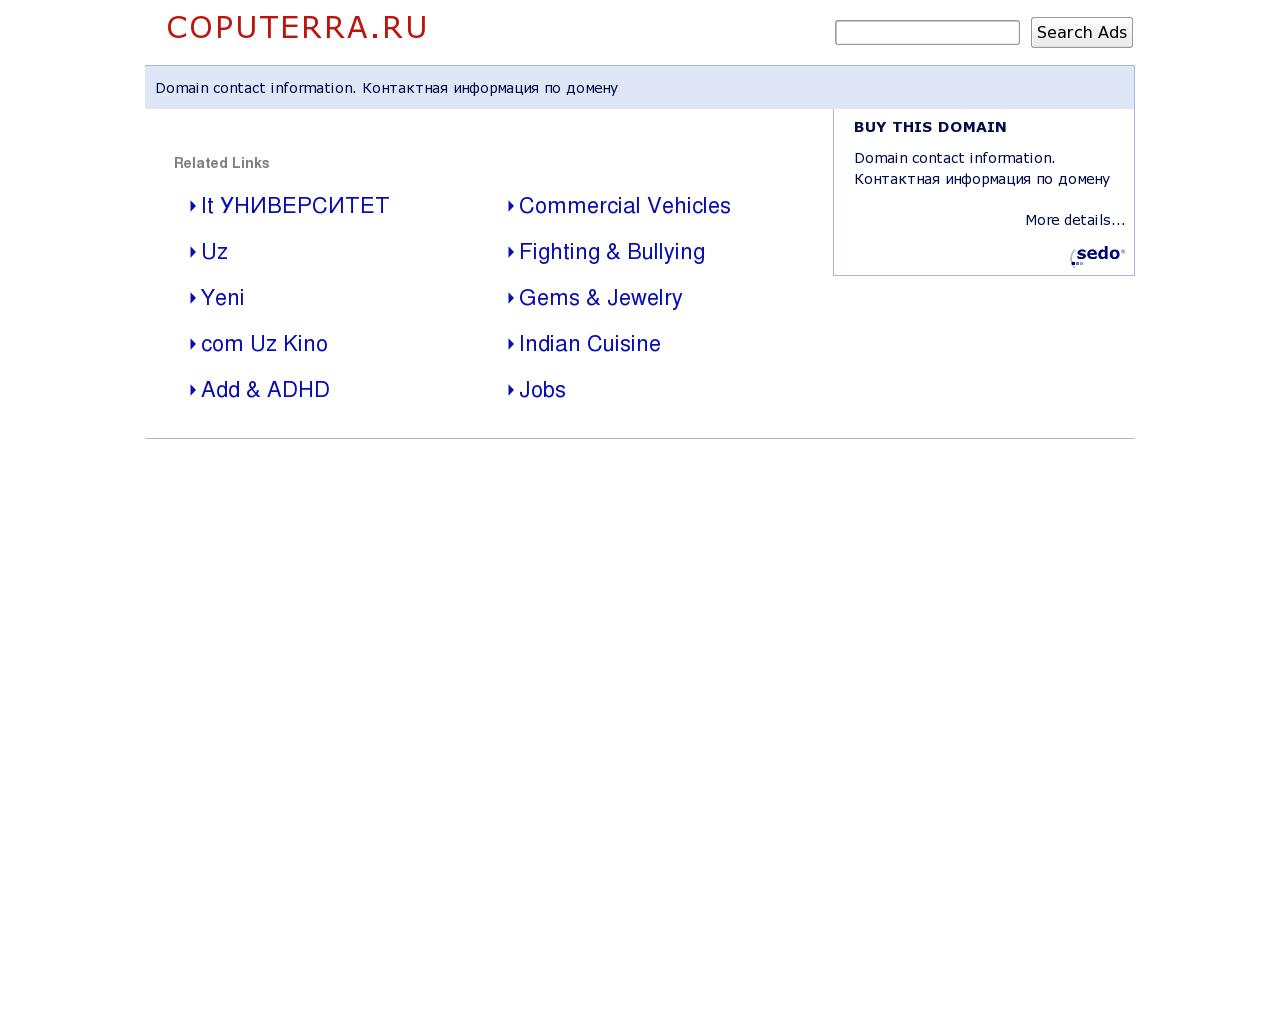 Изображение сайта coputerra.ru в разрешении 1280x1024